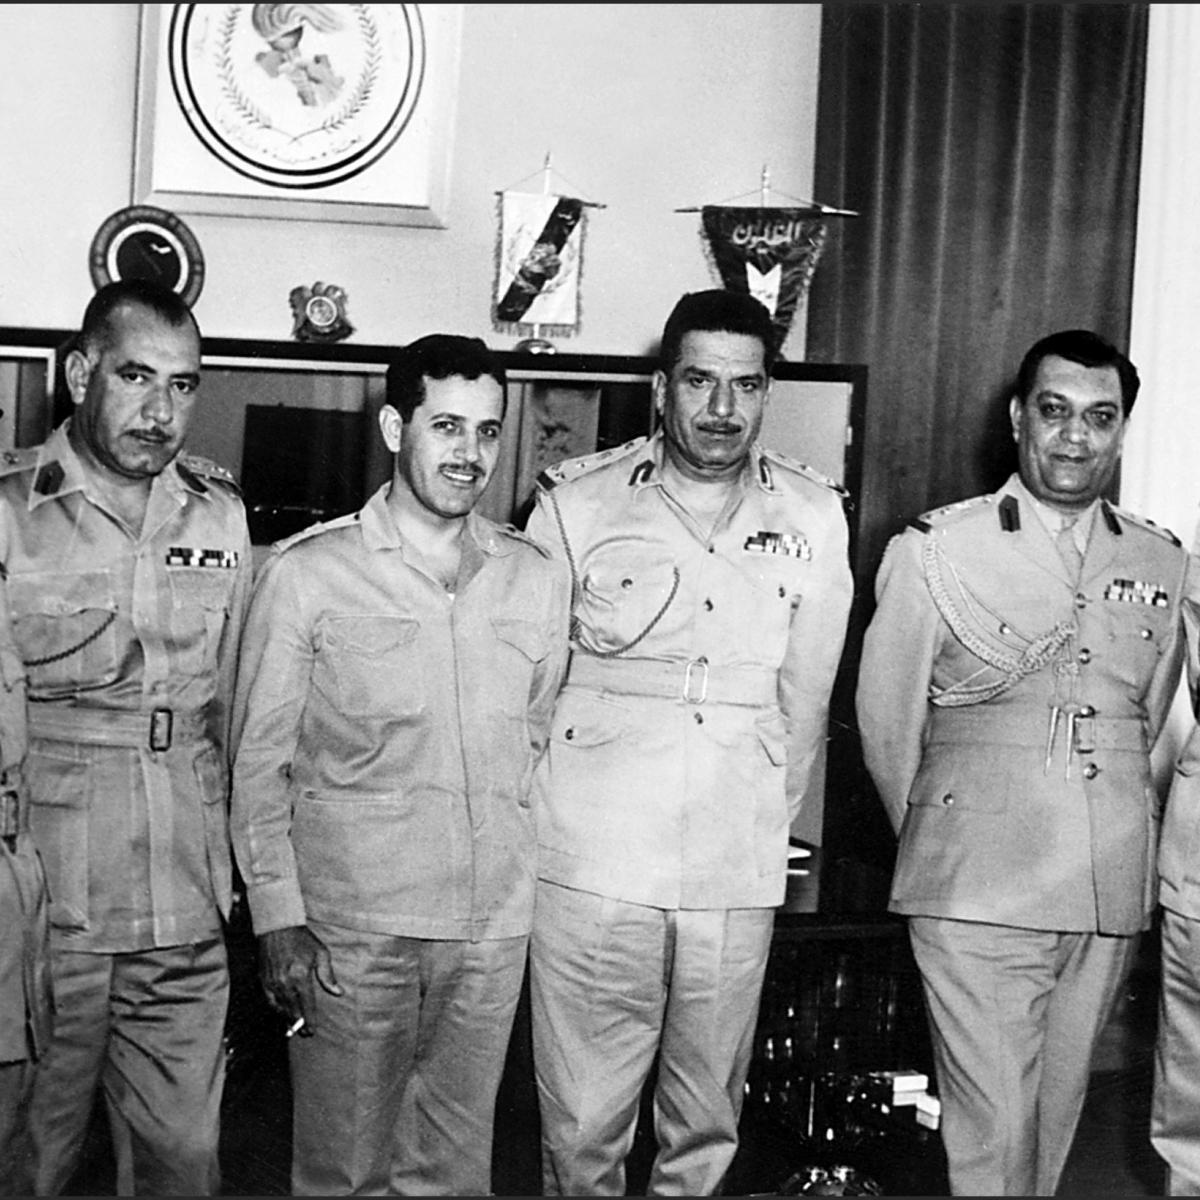 أحمد سويداني رئيس أركان الجيش السوري مع وفد عراقي عشية حرب 1967، الرابع من اليسار (Getty)